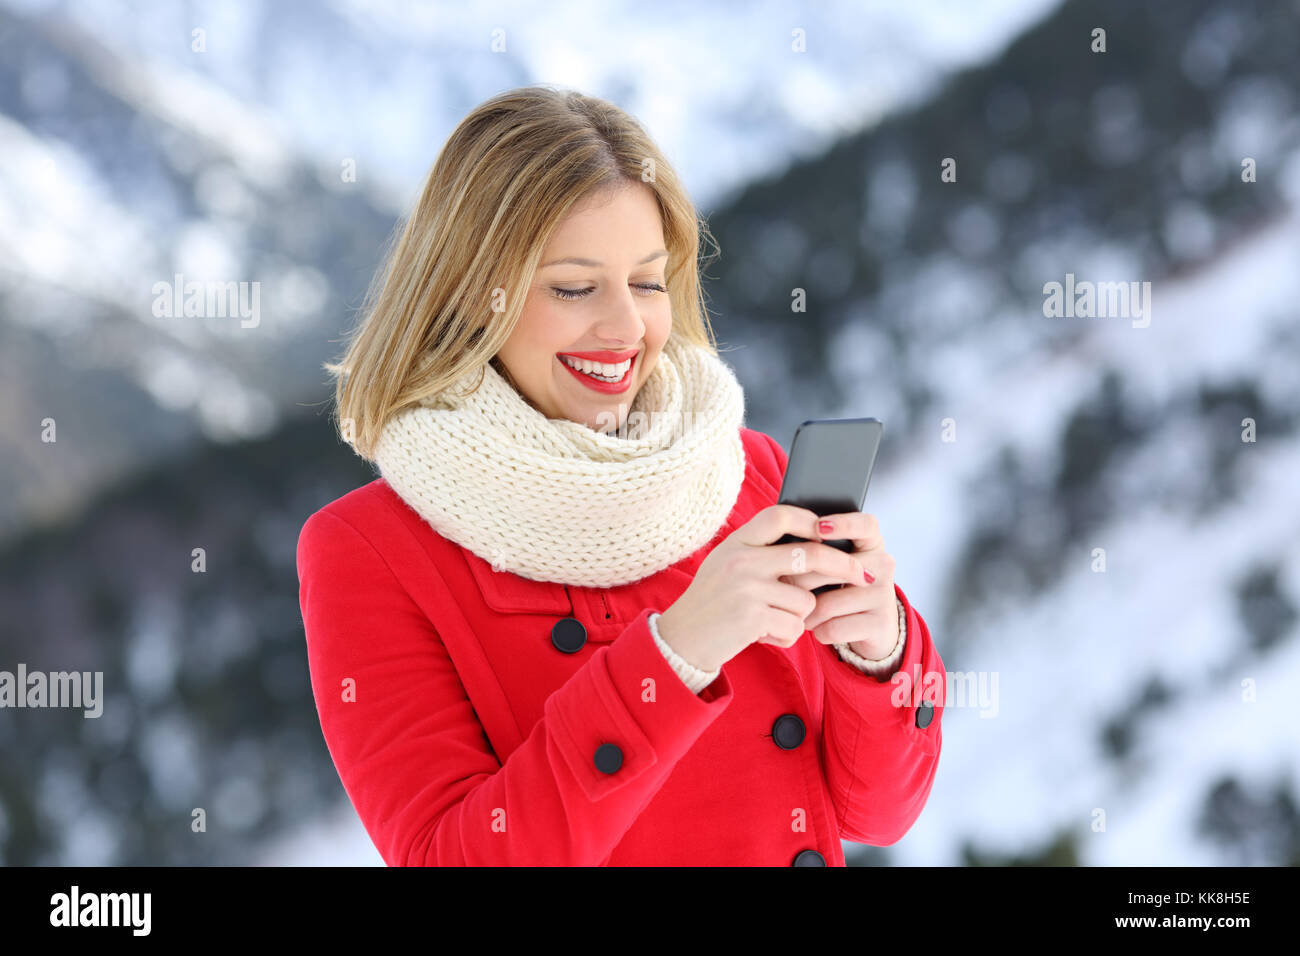 Woman in Red utilizzando smart phone in inverno con una montagna innevata in background Foto Stock